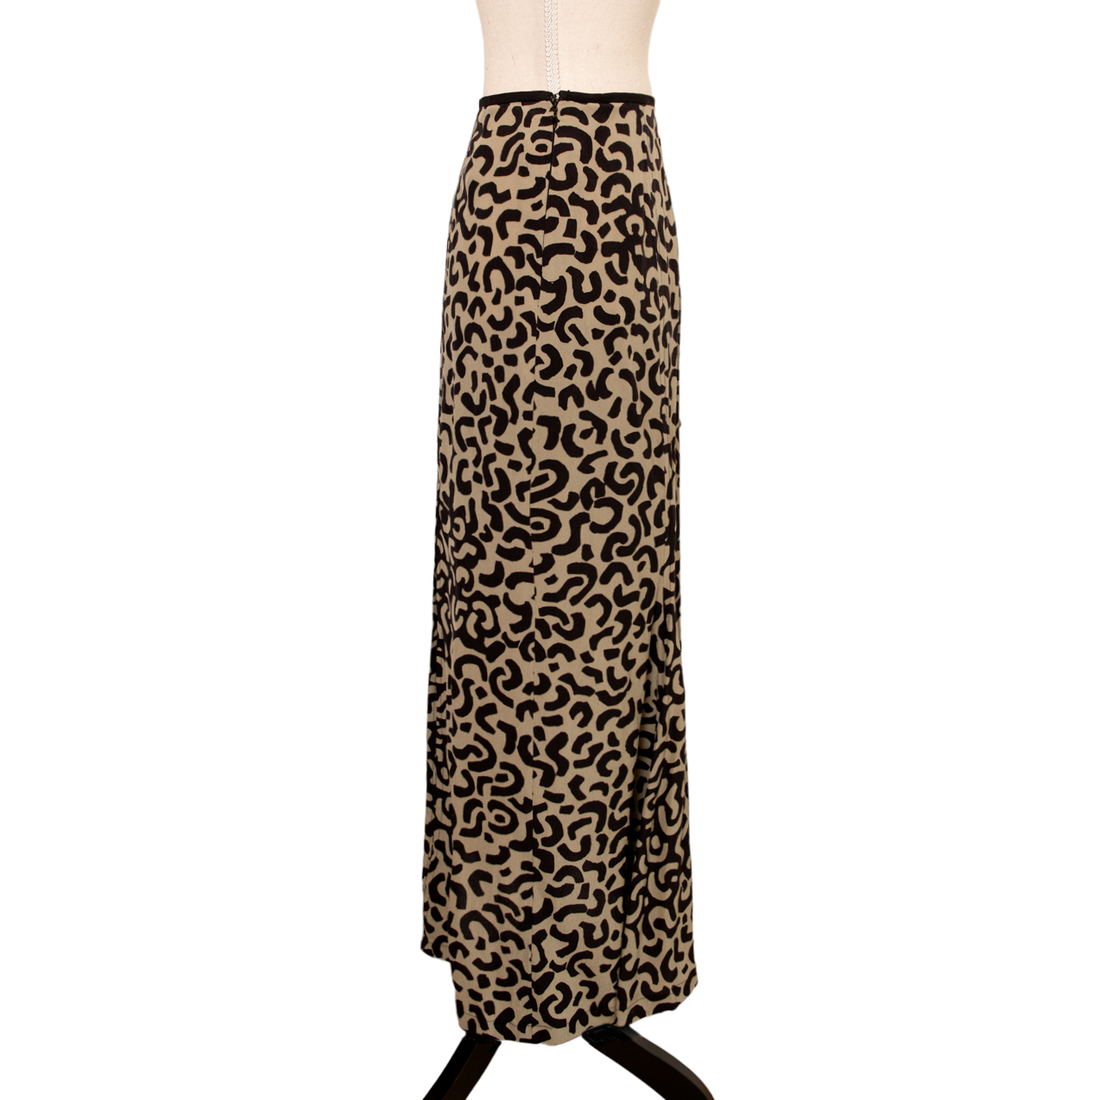 NN midi skirt in leopard print